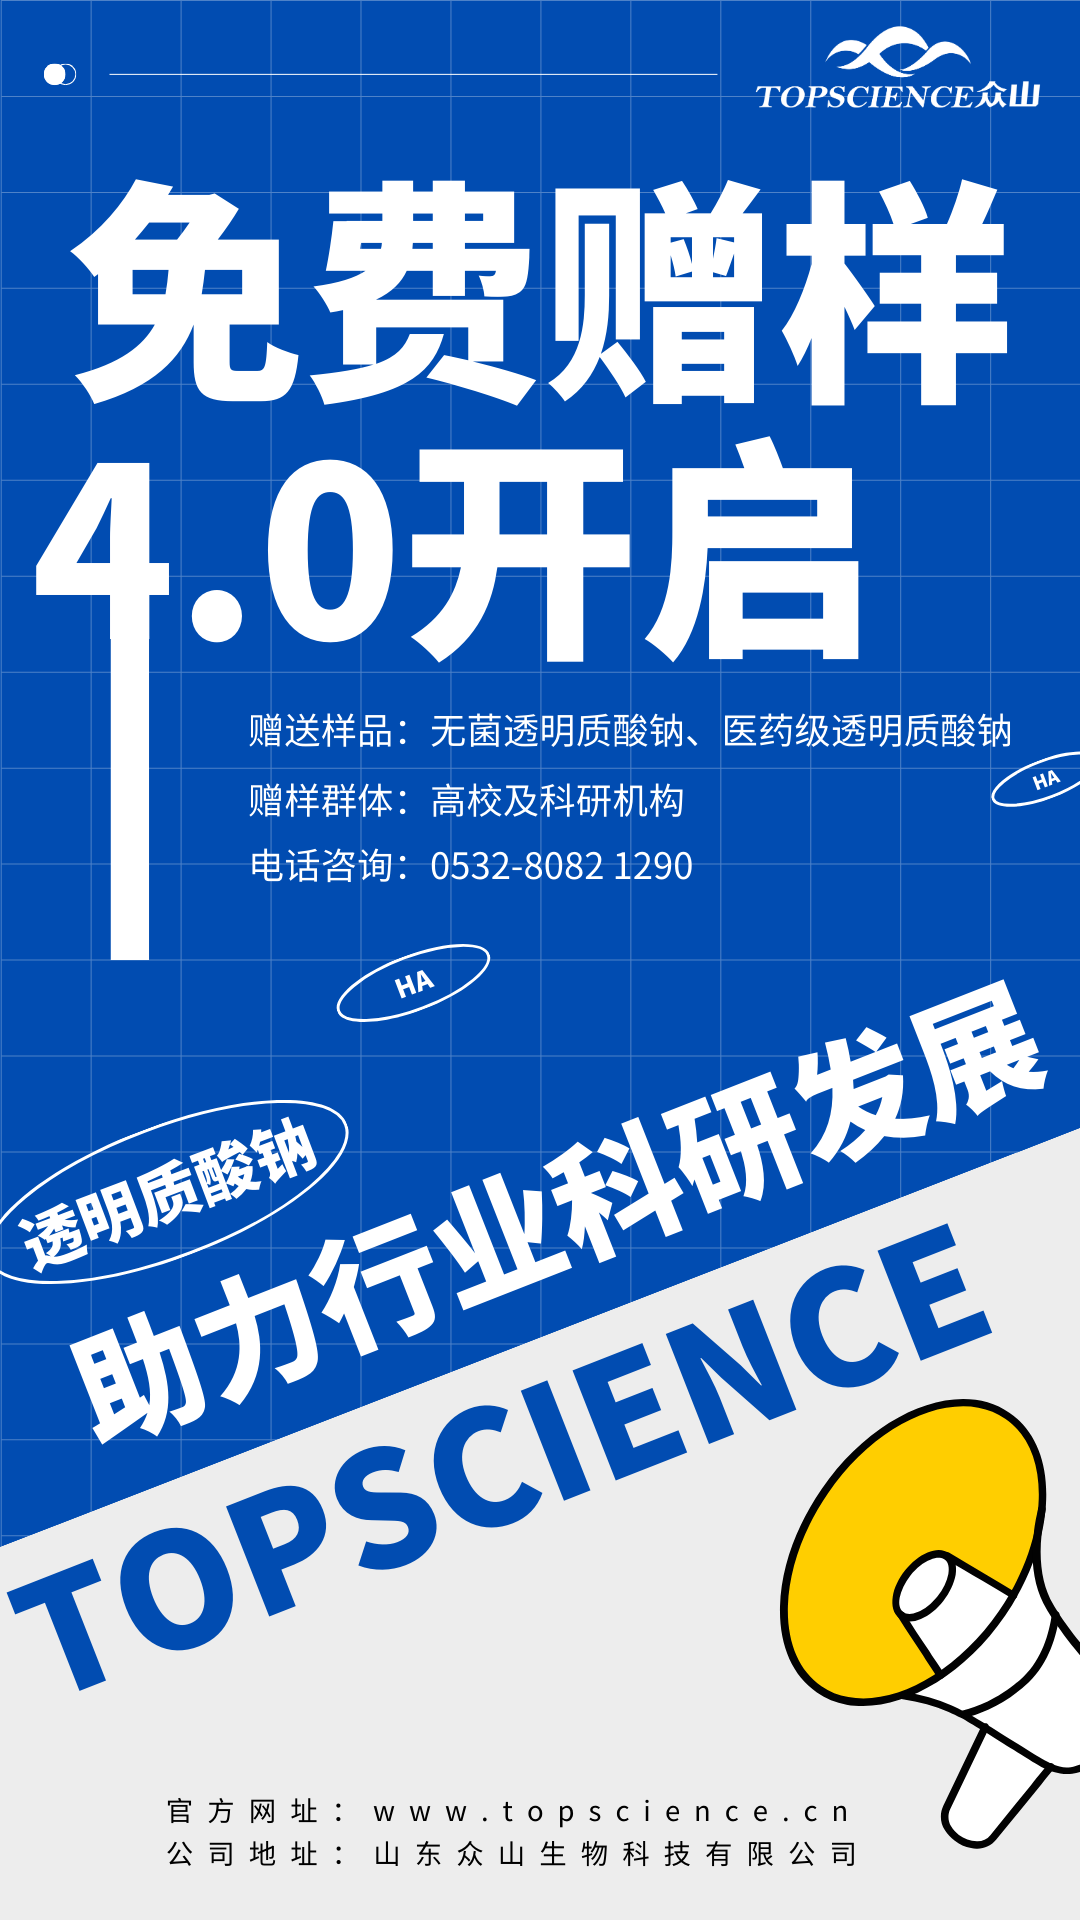 蓝白色复古决战高考热点宣传手机海报 (1).png